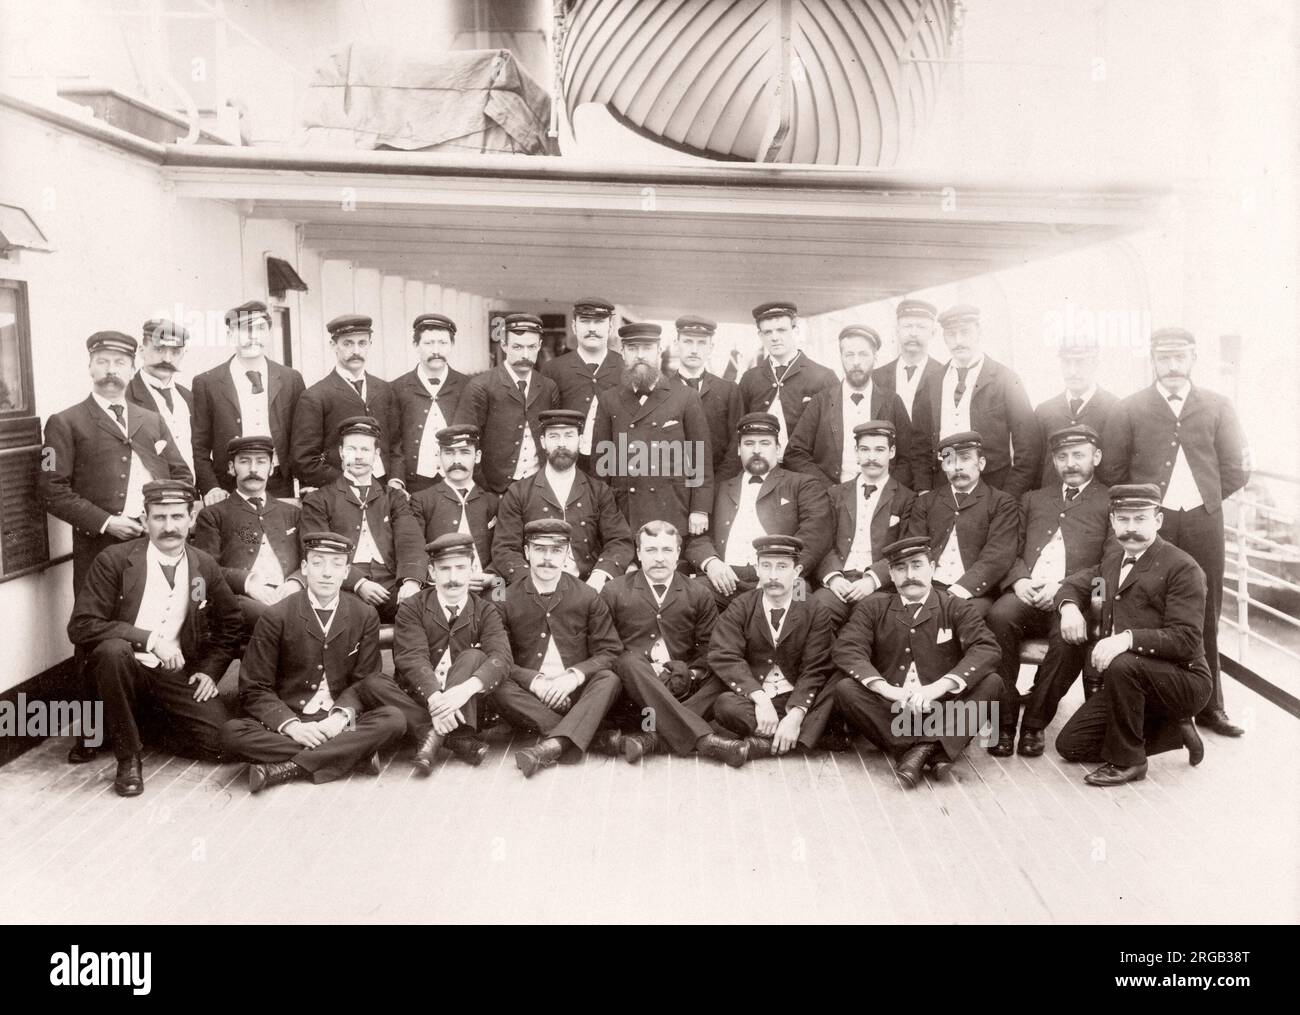 1889 Photographie - RMS - Teutonic à partir d'un album d'images concernant le lancement du navire, qui a été construit par Harland and Wolff de Belfast, pour la White Star Line - plus tard pour atteindre une certaine notoriété en tant que le propriétaire du Titanic. L'album montre l'intérieur de la barque, membre de l'équipage d'essai, croisières, y compris une visite à bord par le Kaiser allemand et Prince de Galles, ainsi que de nombreuses images d'autres visiteurs. Cette image - délégué en chef et adjoints Banque D'Images